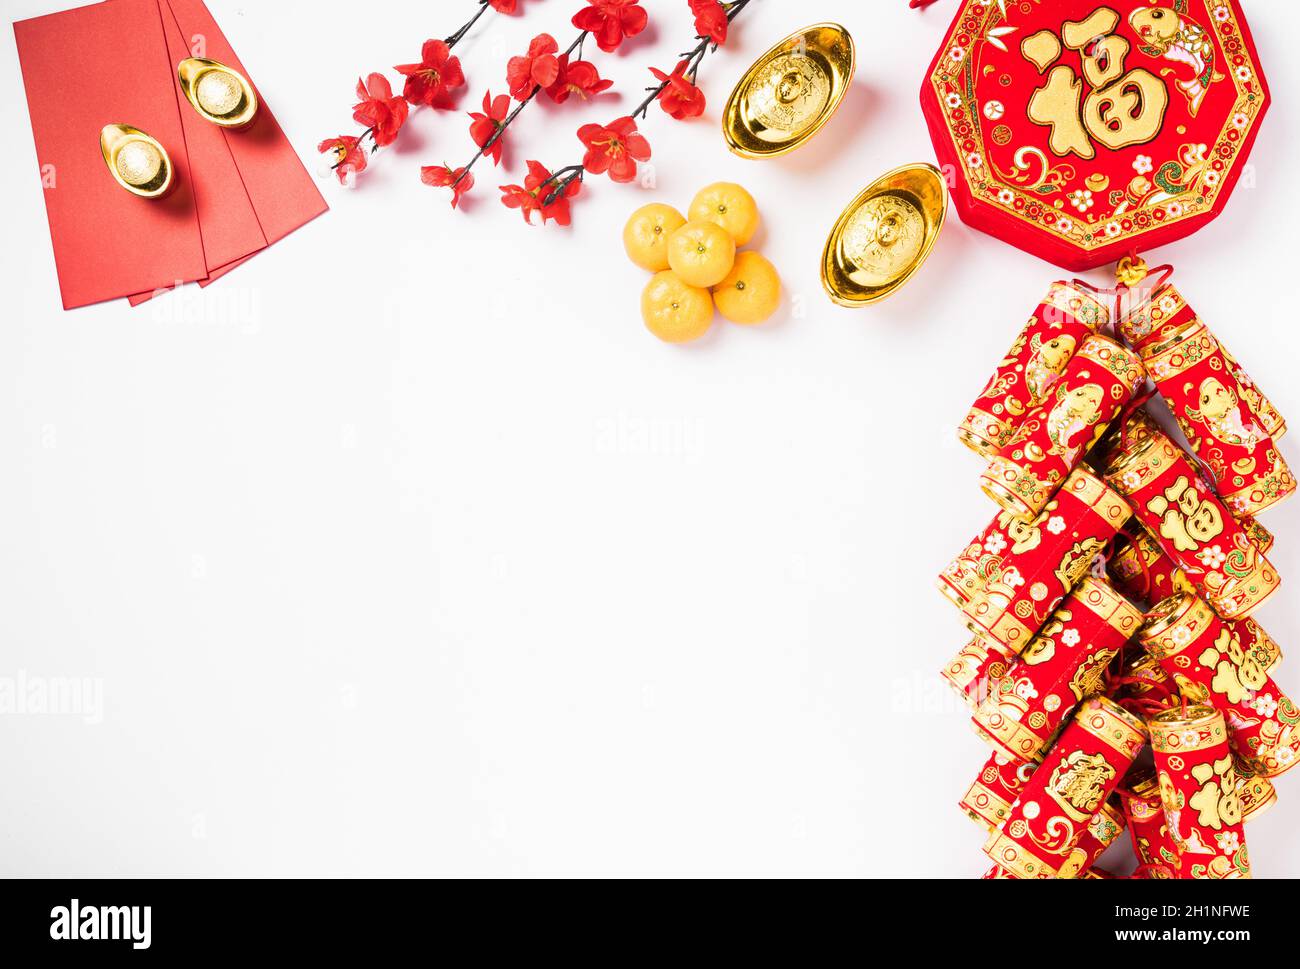 Lễ Tết Nguyên Đán Trung Quốc: Bên cạnh Tết Nguyên Đán của Việt Nam, Trung Quốc cũng có lễ Tết Nguyên Đán rất đặc sắc. Hãy xem hình ảnh về lễ Tết này để tìm hiểu về nền văn hóa phong phú của Trung Quốc. Sự khác biệt giữa hai nước sẽ làm bạn bất ngờ.